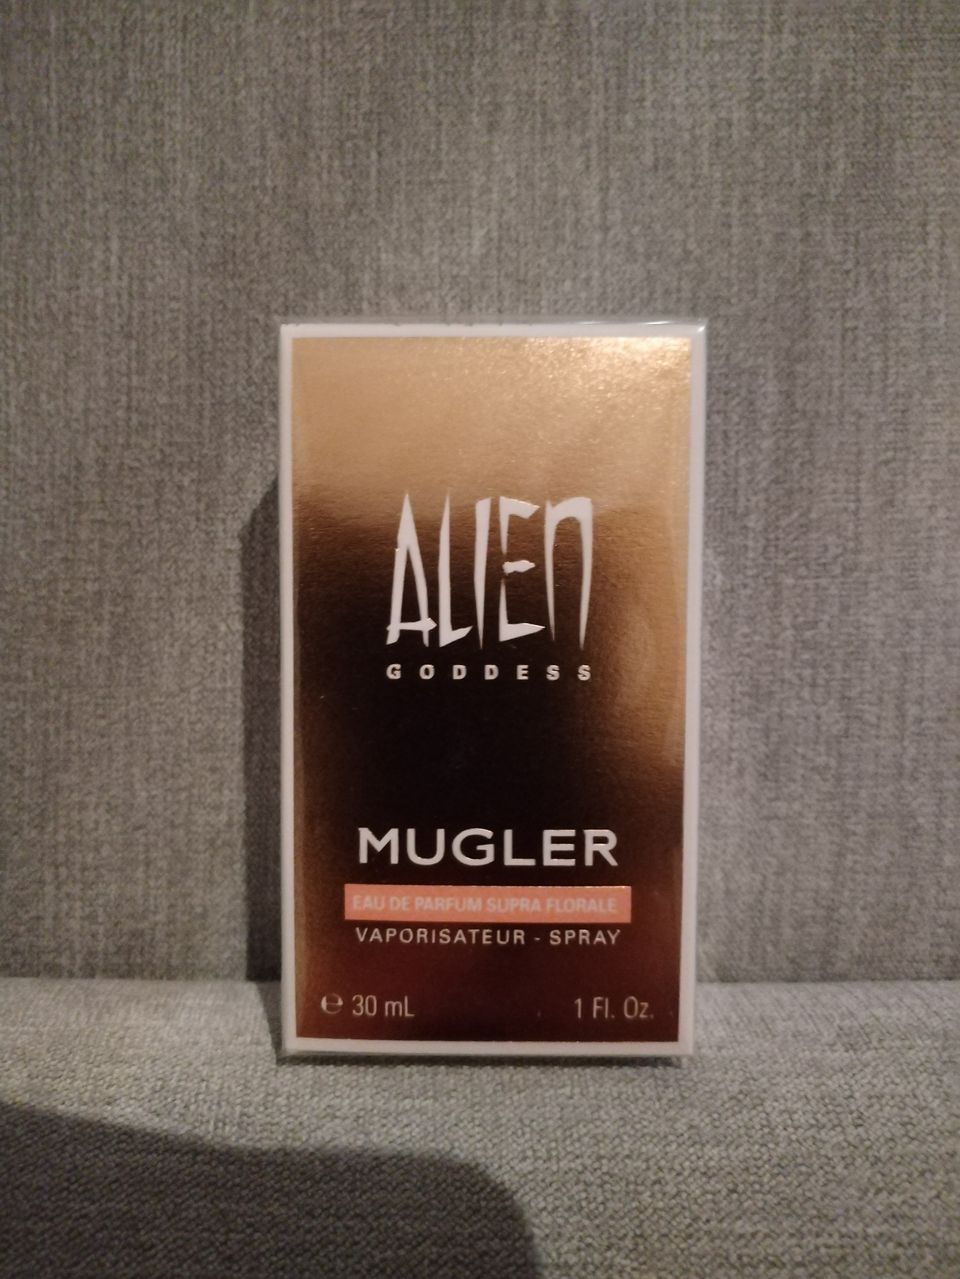 Mugler Alien Goddess edp